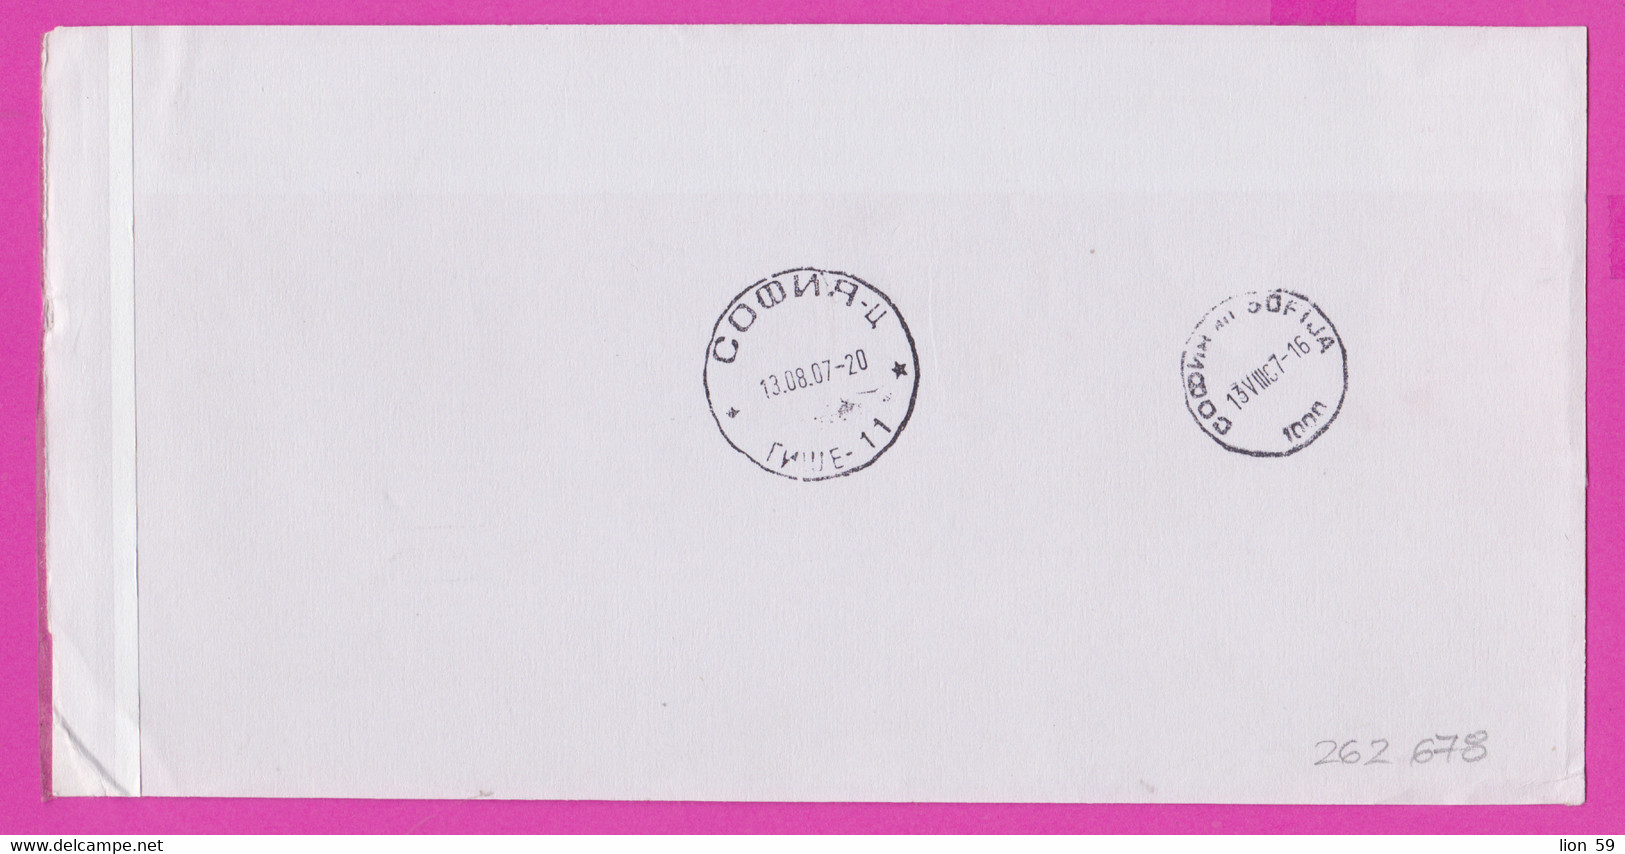 262678 / Form CN 07 Bulgaria 2007 Sofia - Netherlands - AVIS De Réception /de Livraison /de Paiement/ D'inscription - Storia Postale